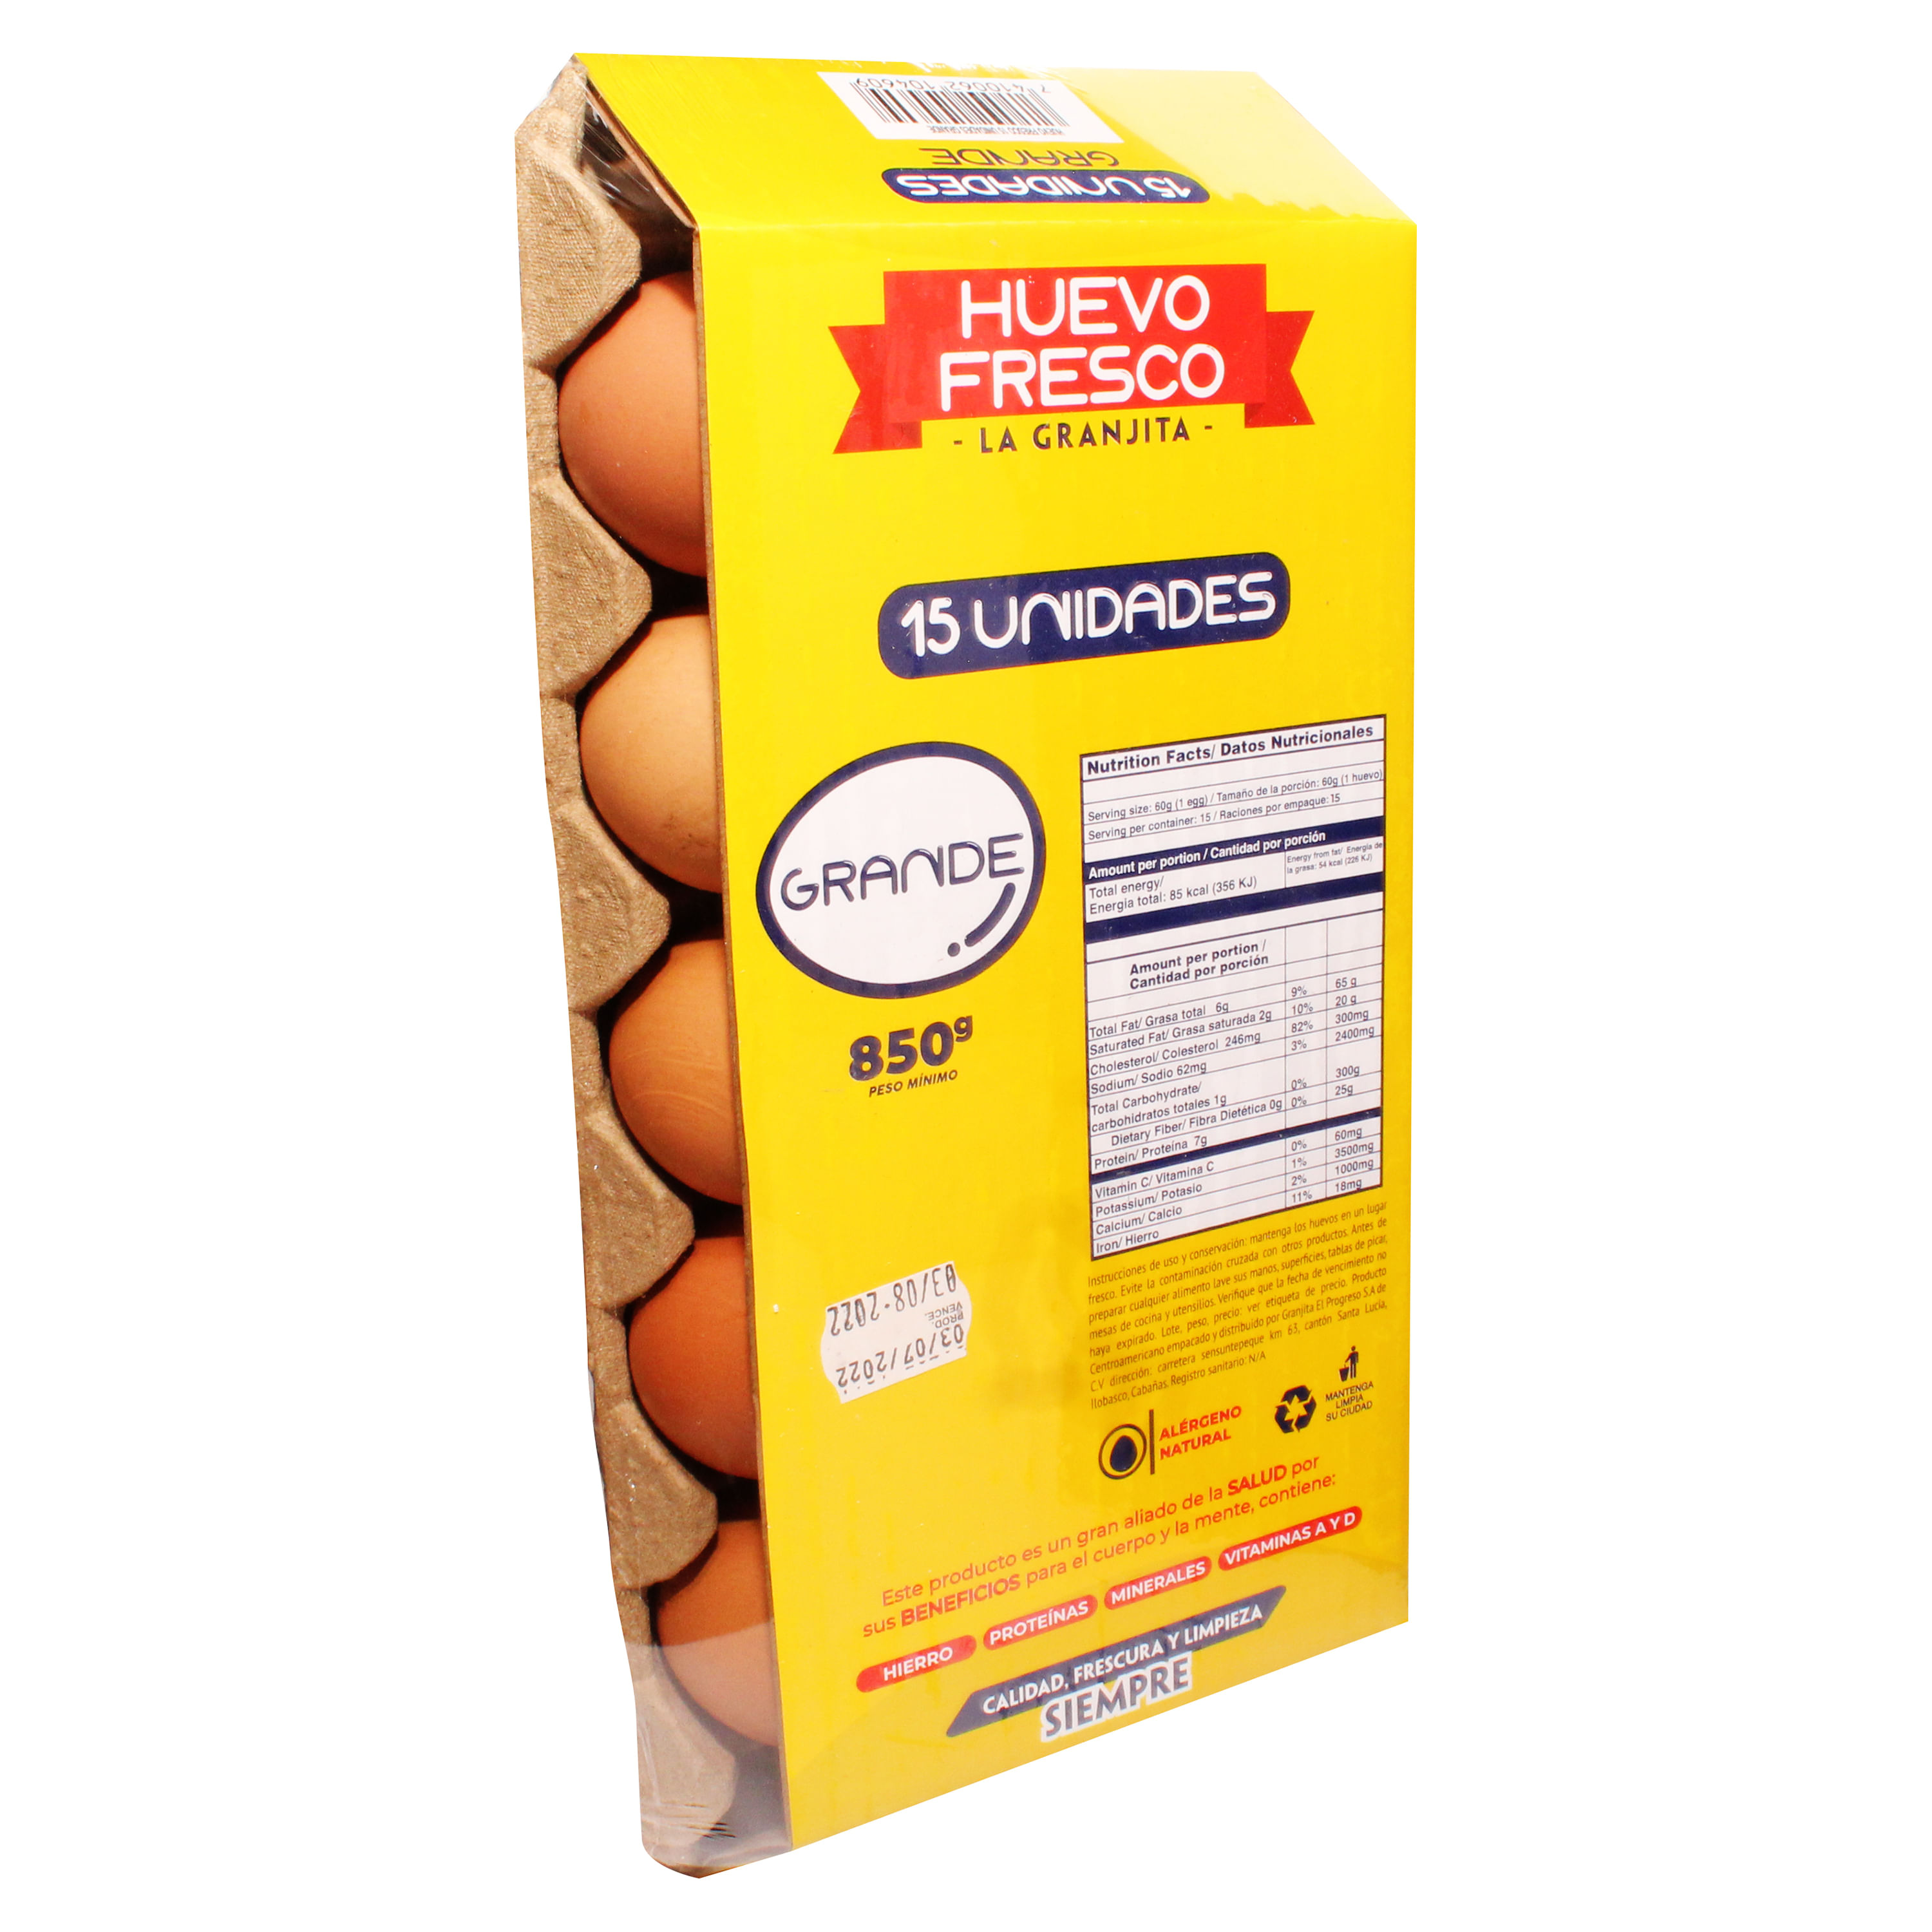 Huevos frescos de proximidad – Mercaprop